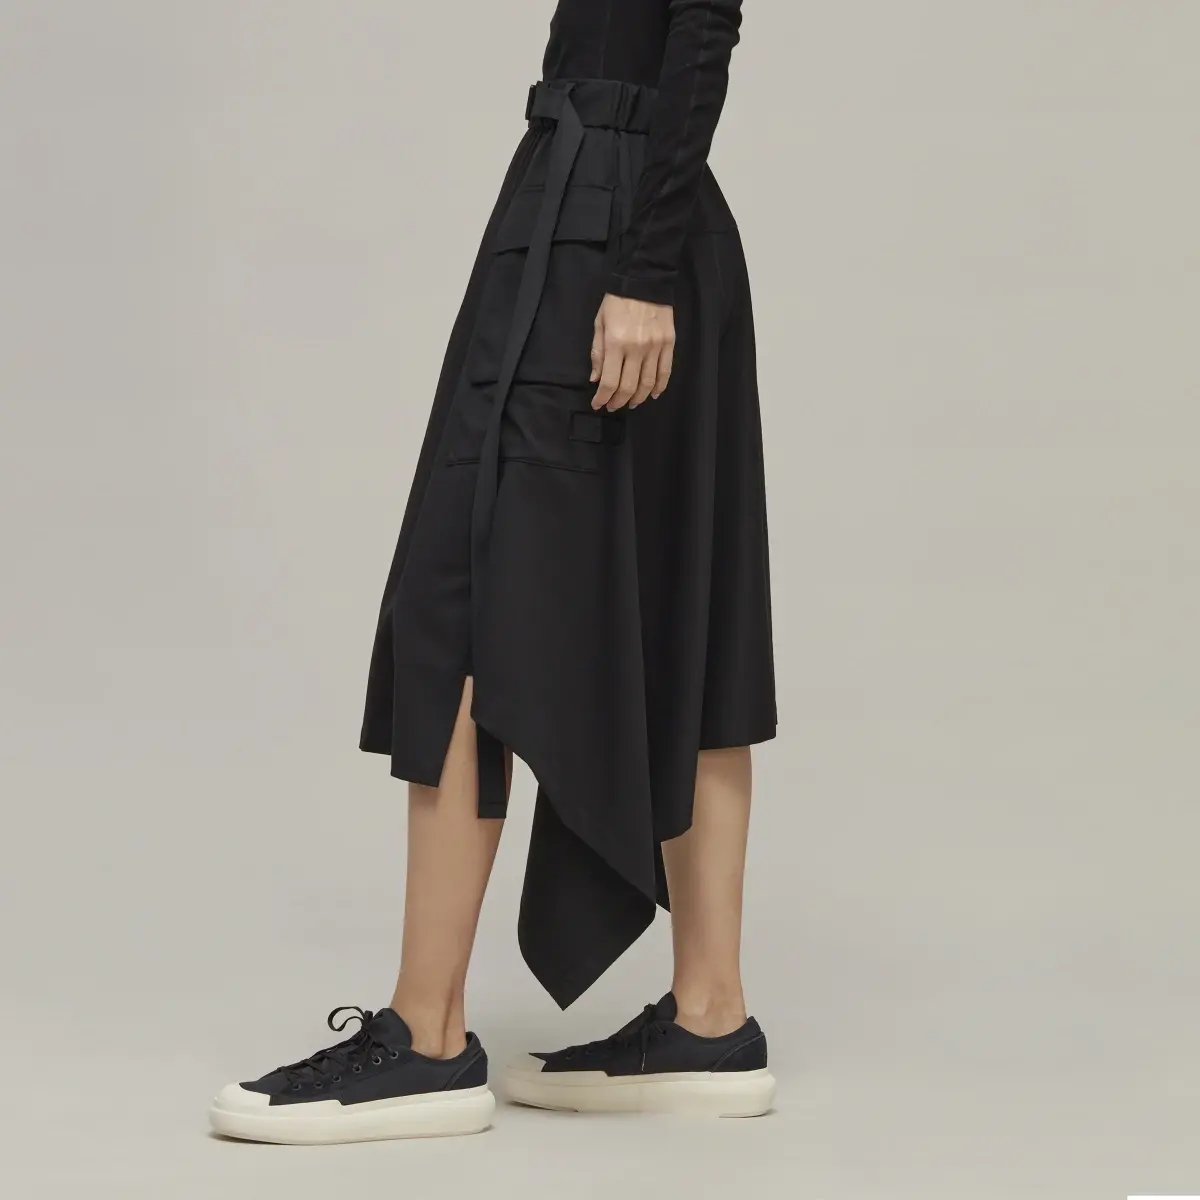 Adidas Y-3 Refined Wool Skirt. 2